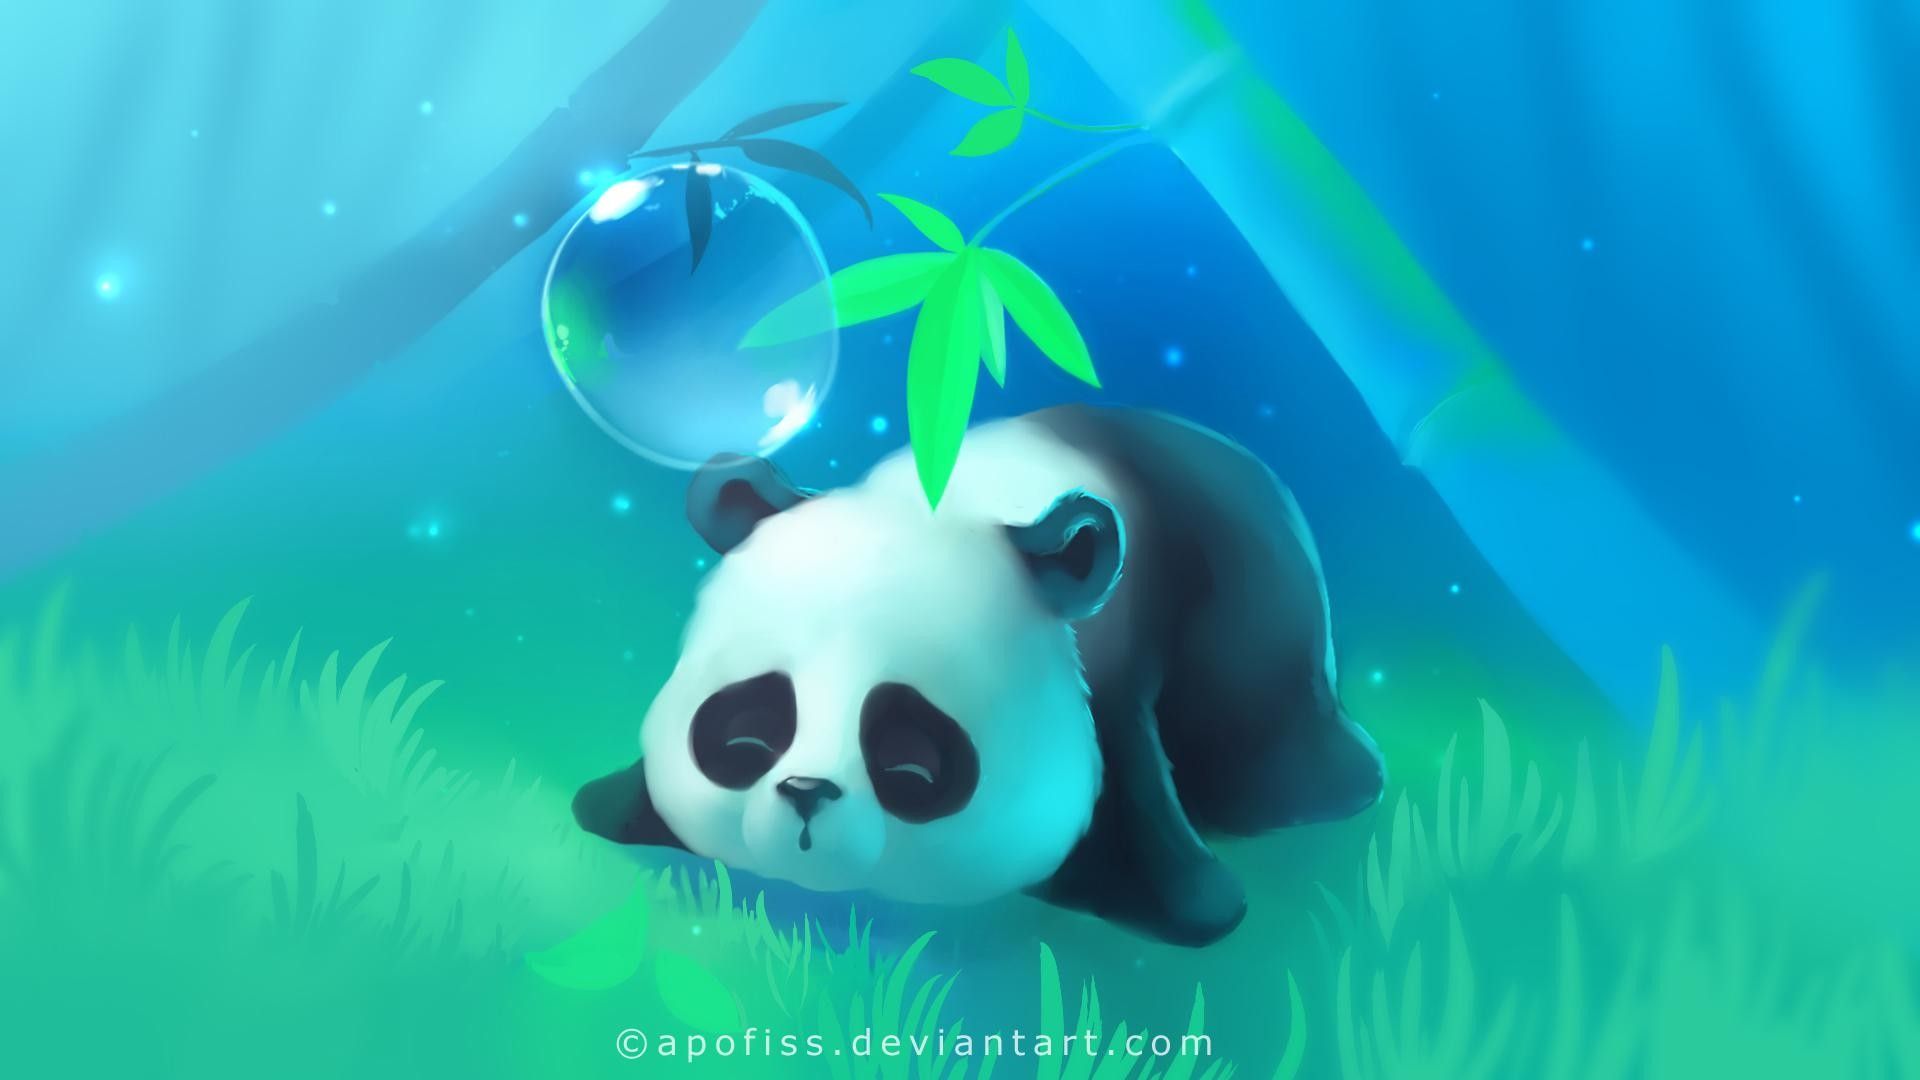 Cute Cartoon Panda Wallpaper Top